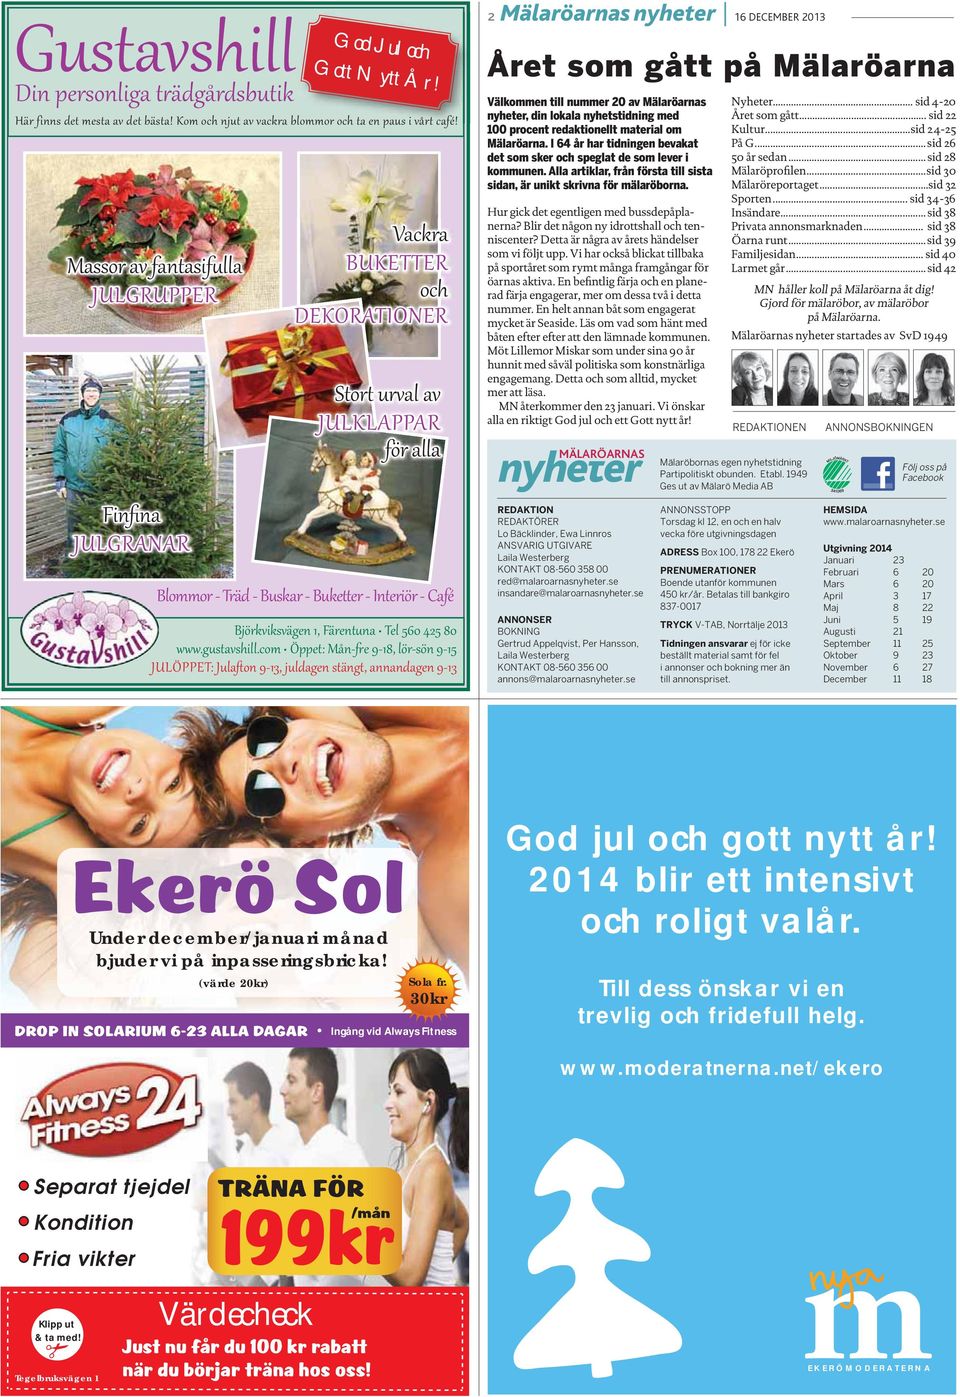 2013 Året som gått på Mälaröarna Välkommen till nummer 20 av Mälaröarnas nyheter, din lokala nyhetstidning med 100 procent redaktionellt material om Mälaröarna.